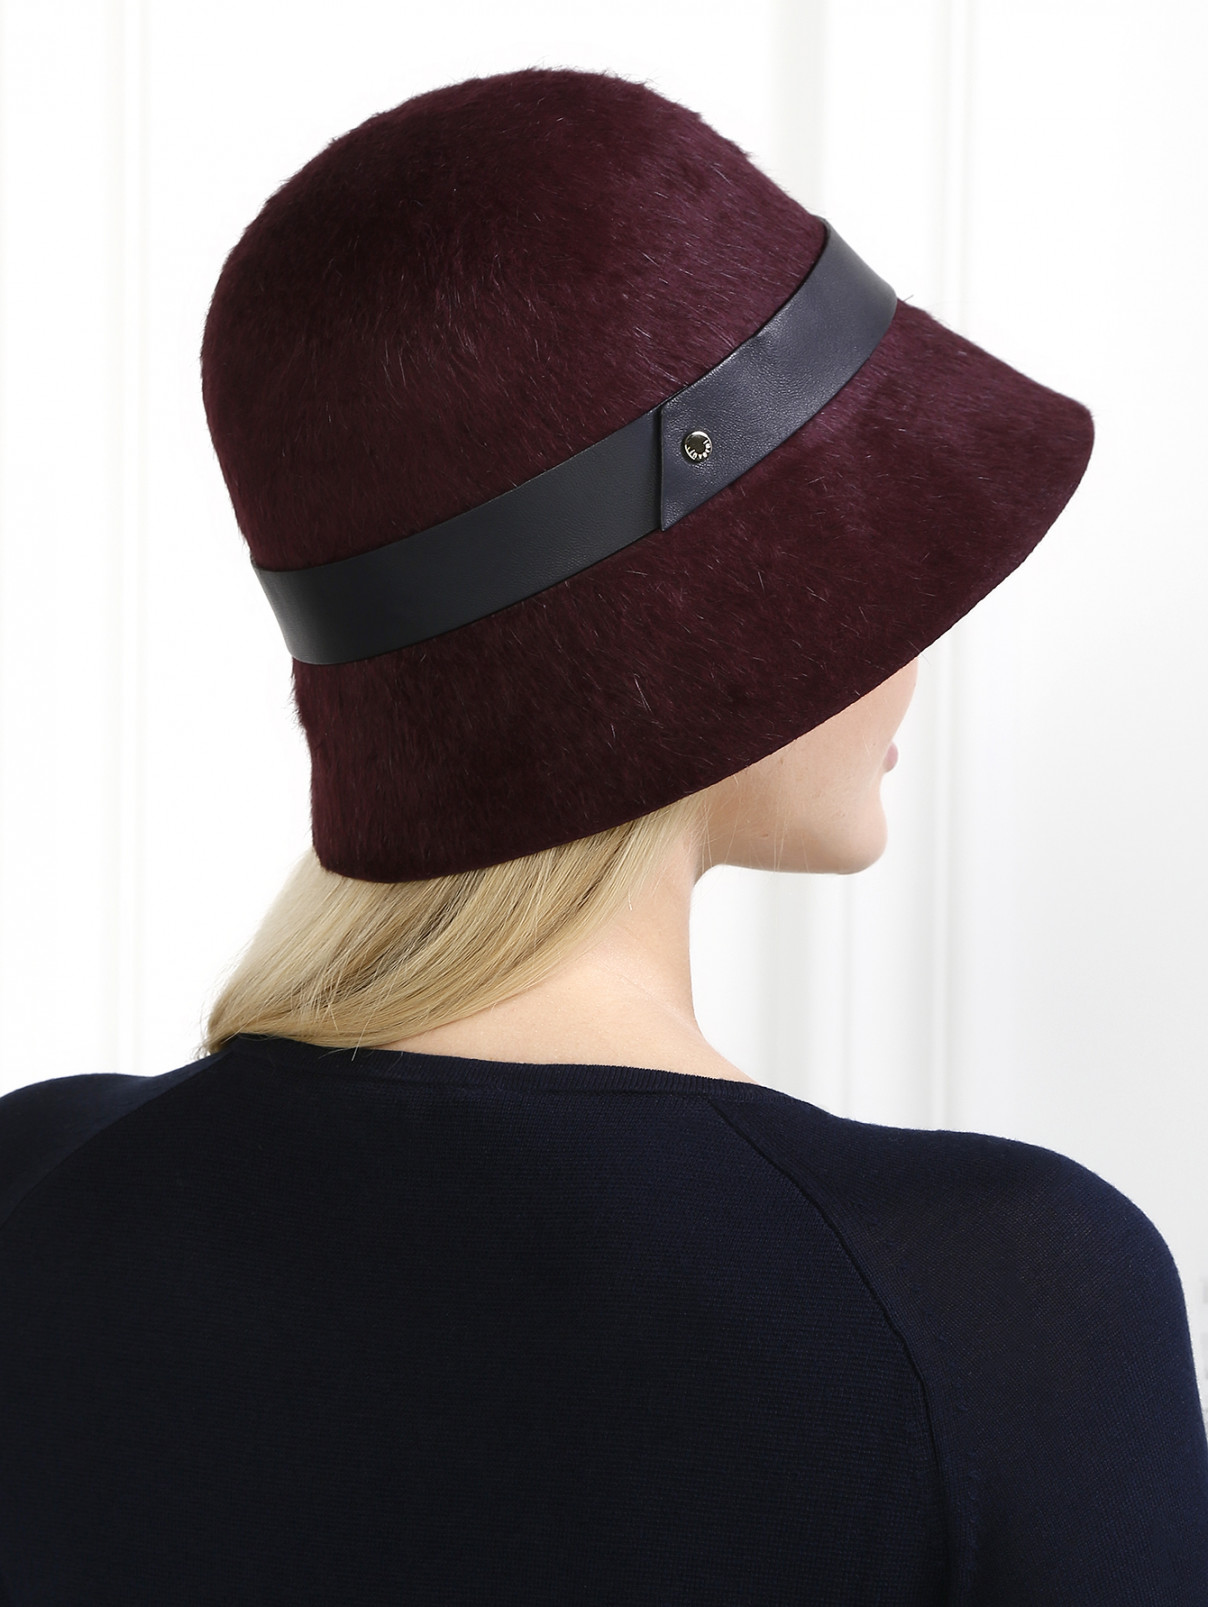 Шляпа из шерсти Inverni  –  Модель Общий вид  – Цвет:  Красный